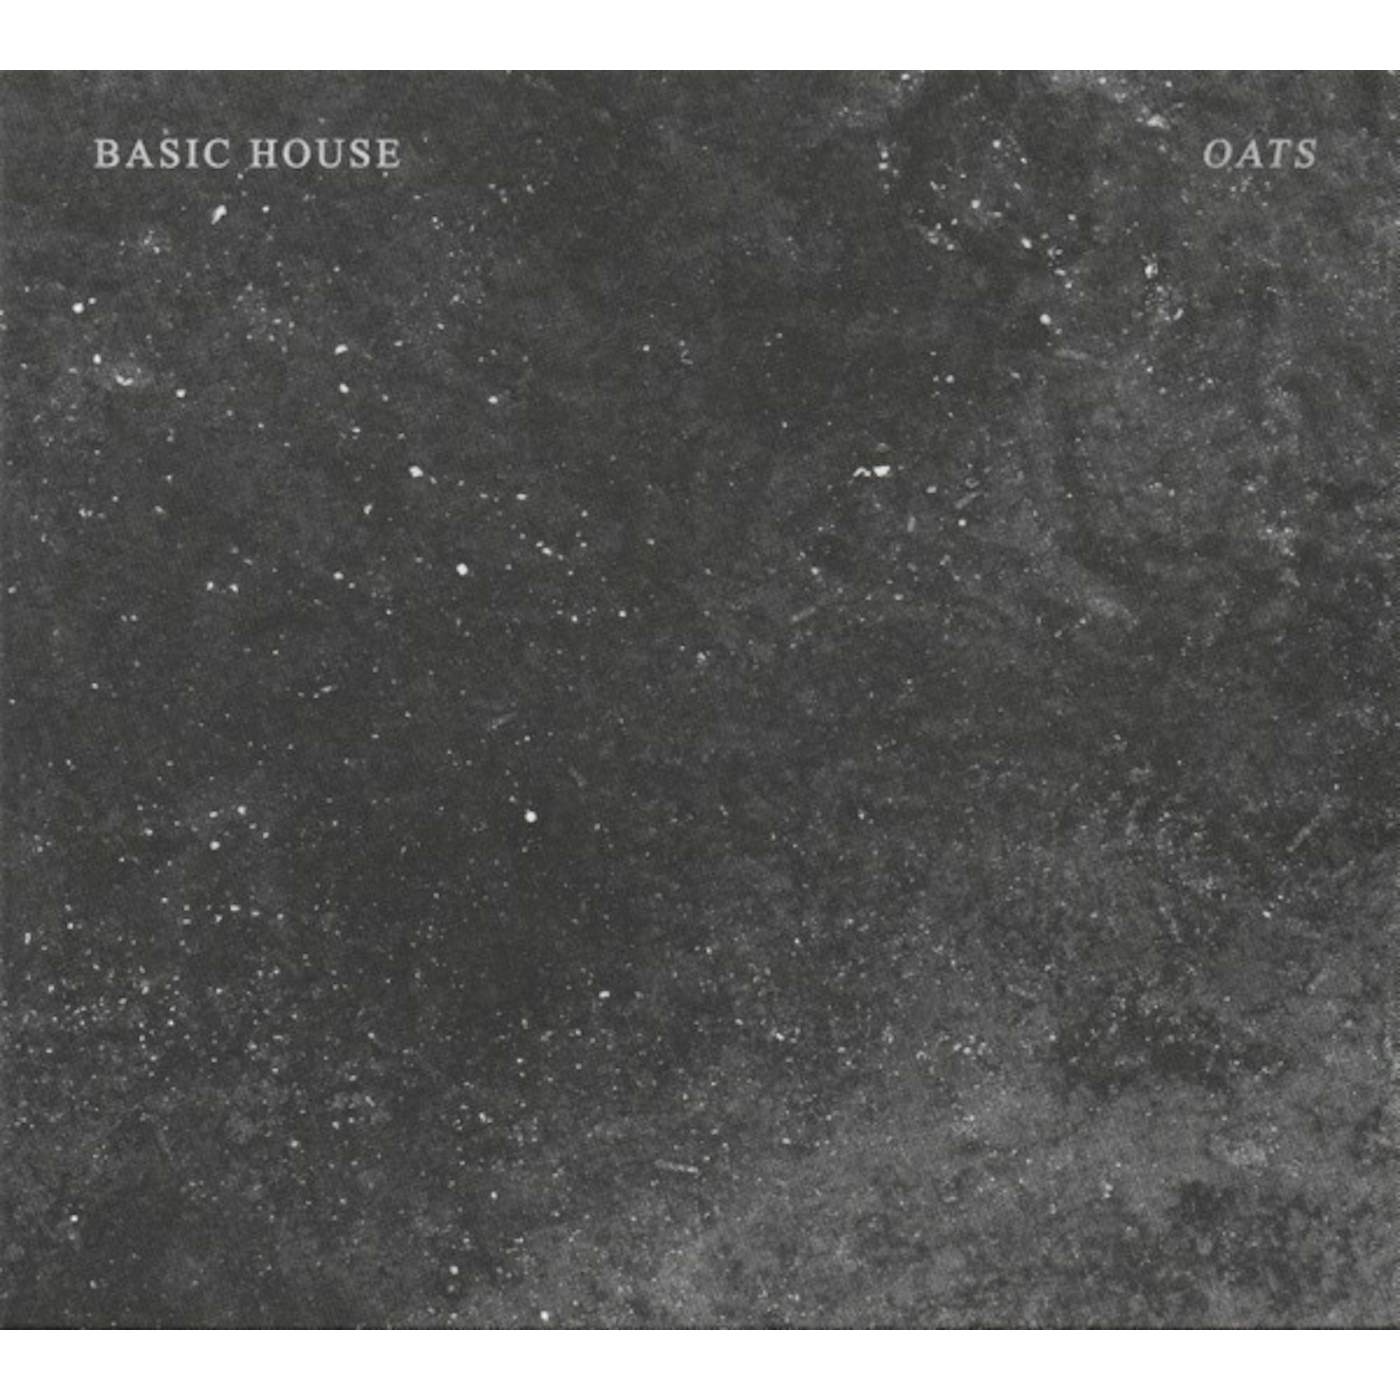 Basic House Oats Vinyl Record